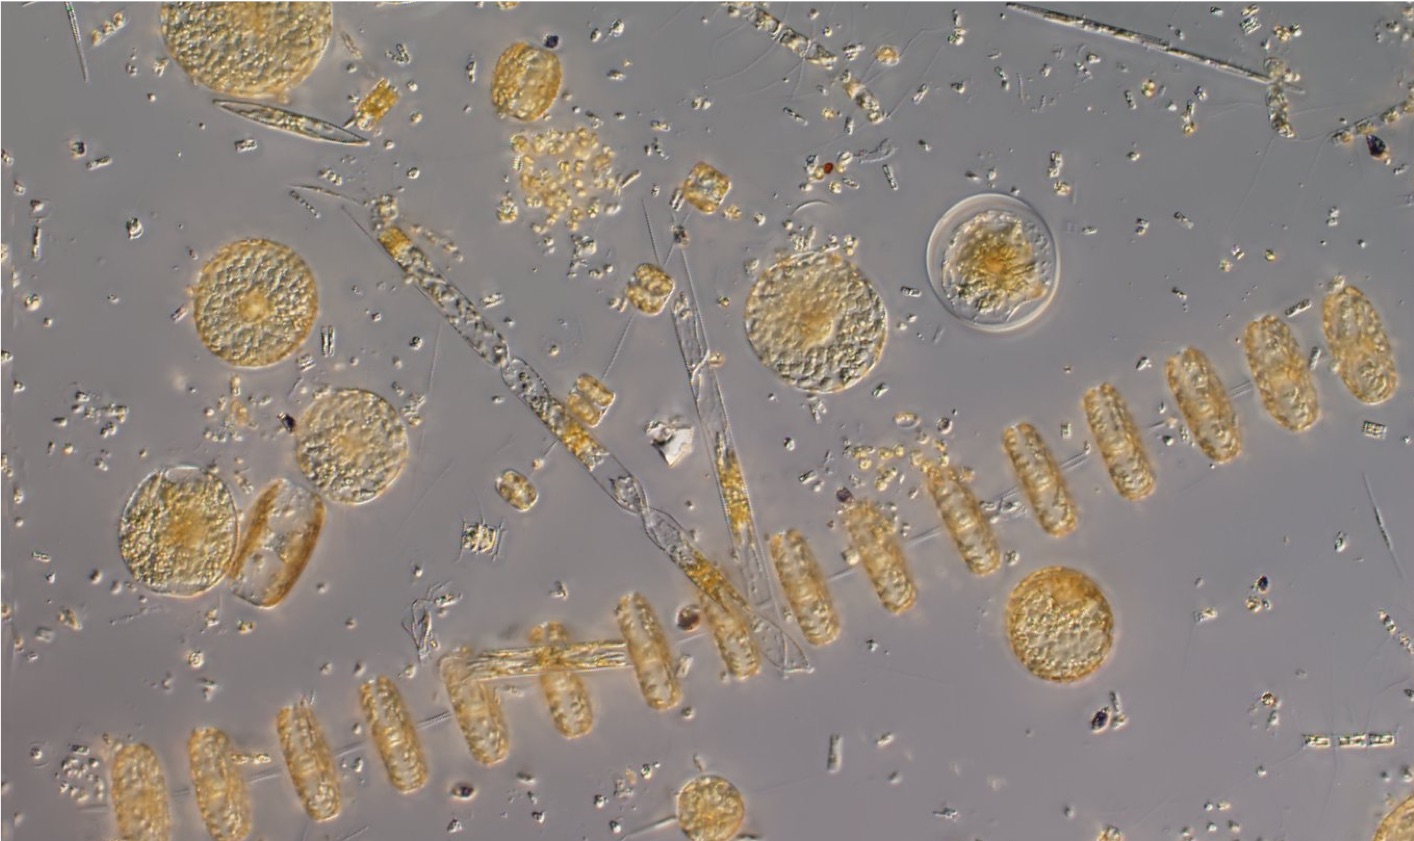 Фитопланктон дать определение. Фитопланктон нанопланктон зоопланктон. Фитопланктон водоросли. Фитопланктон под микроскопом. Фитопланктон хищники сапрофиты.